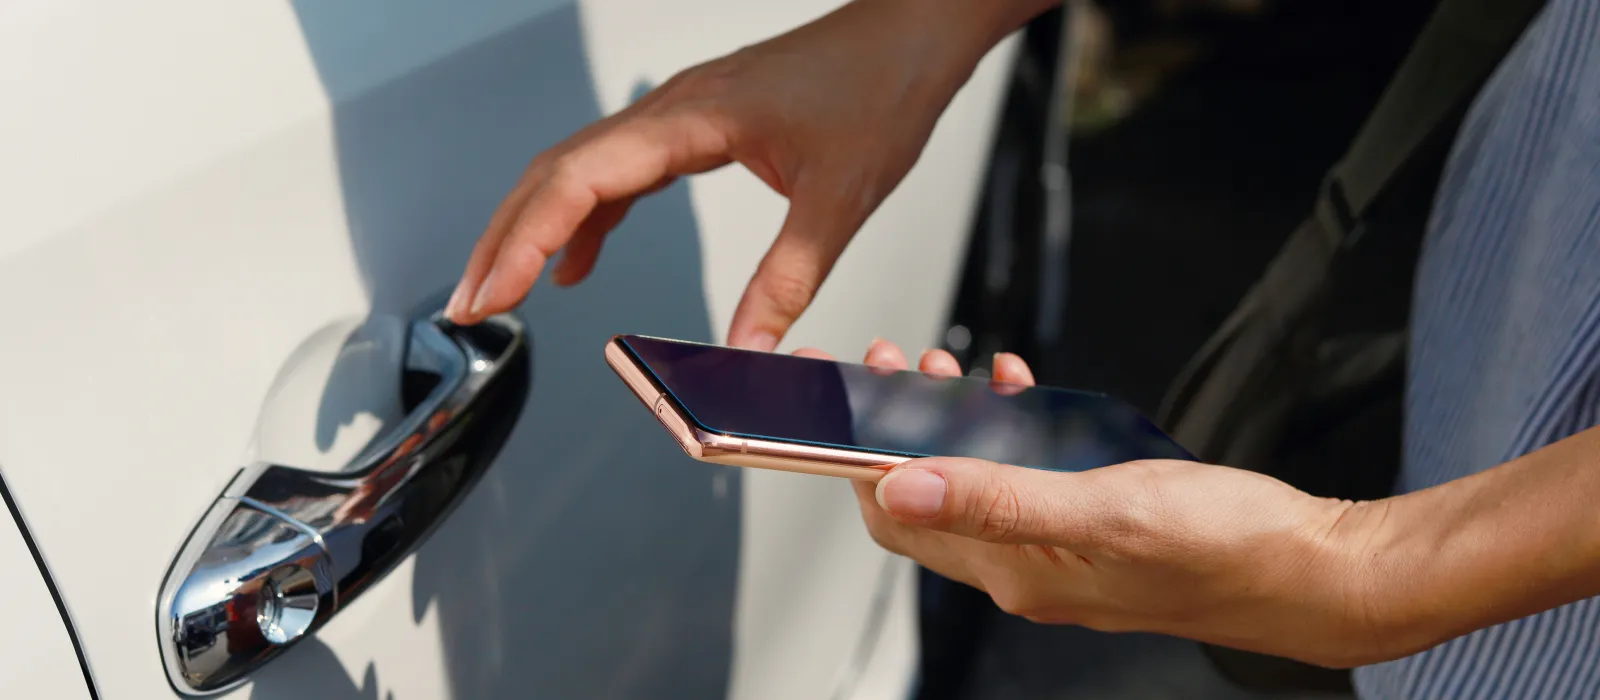 スマートフォンを持った女性がNFC技術で車のドアを開ける